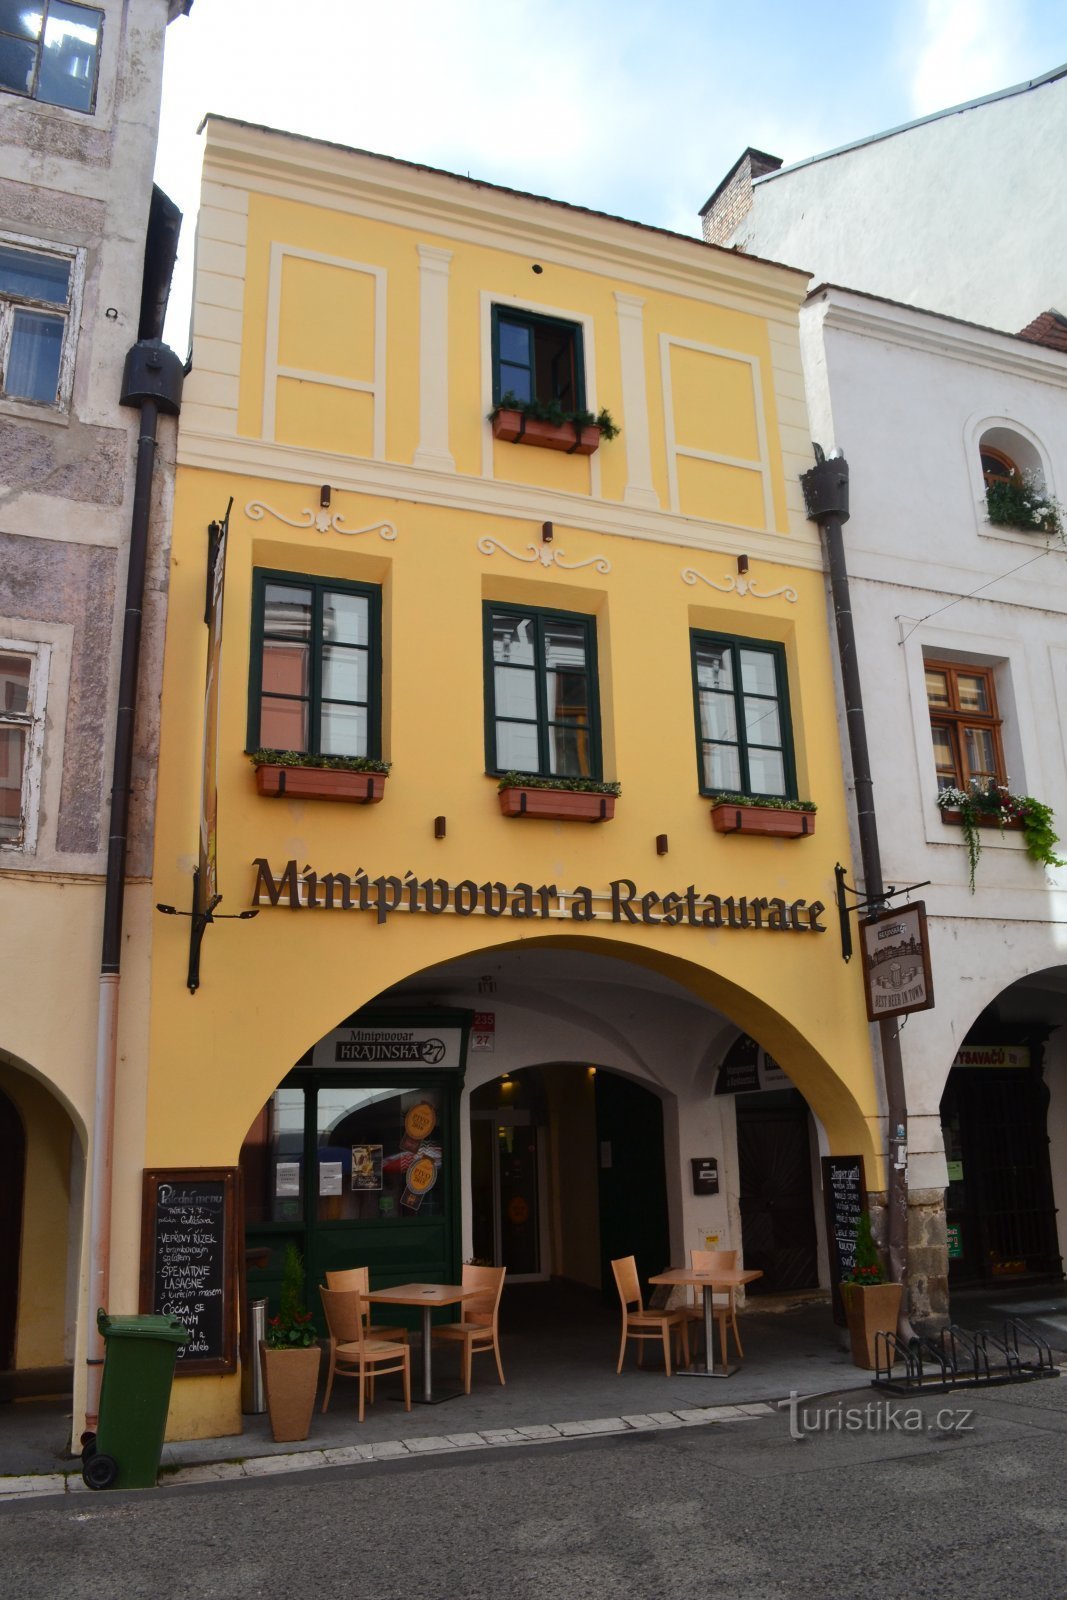 Minibrouwerij en restaurant